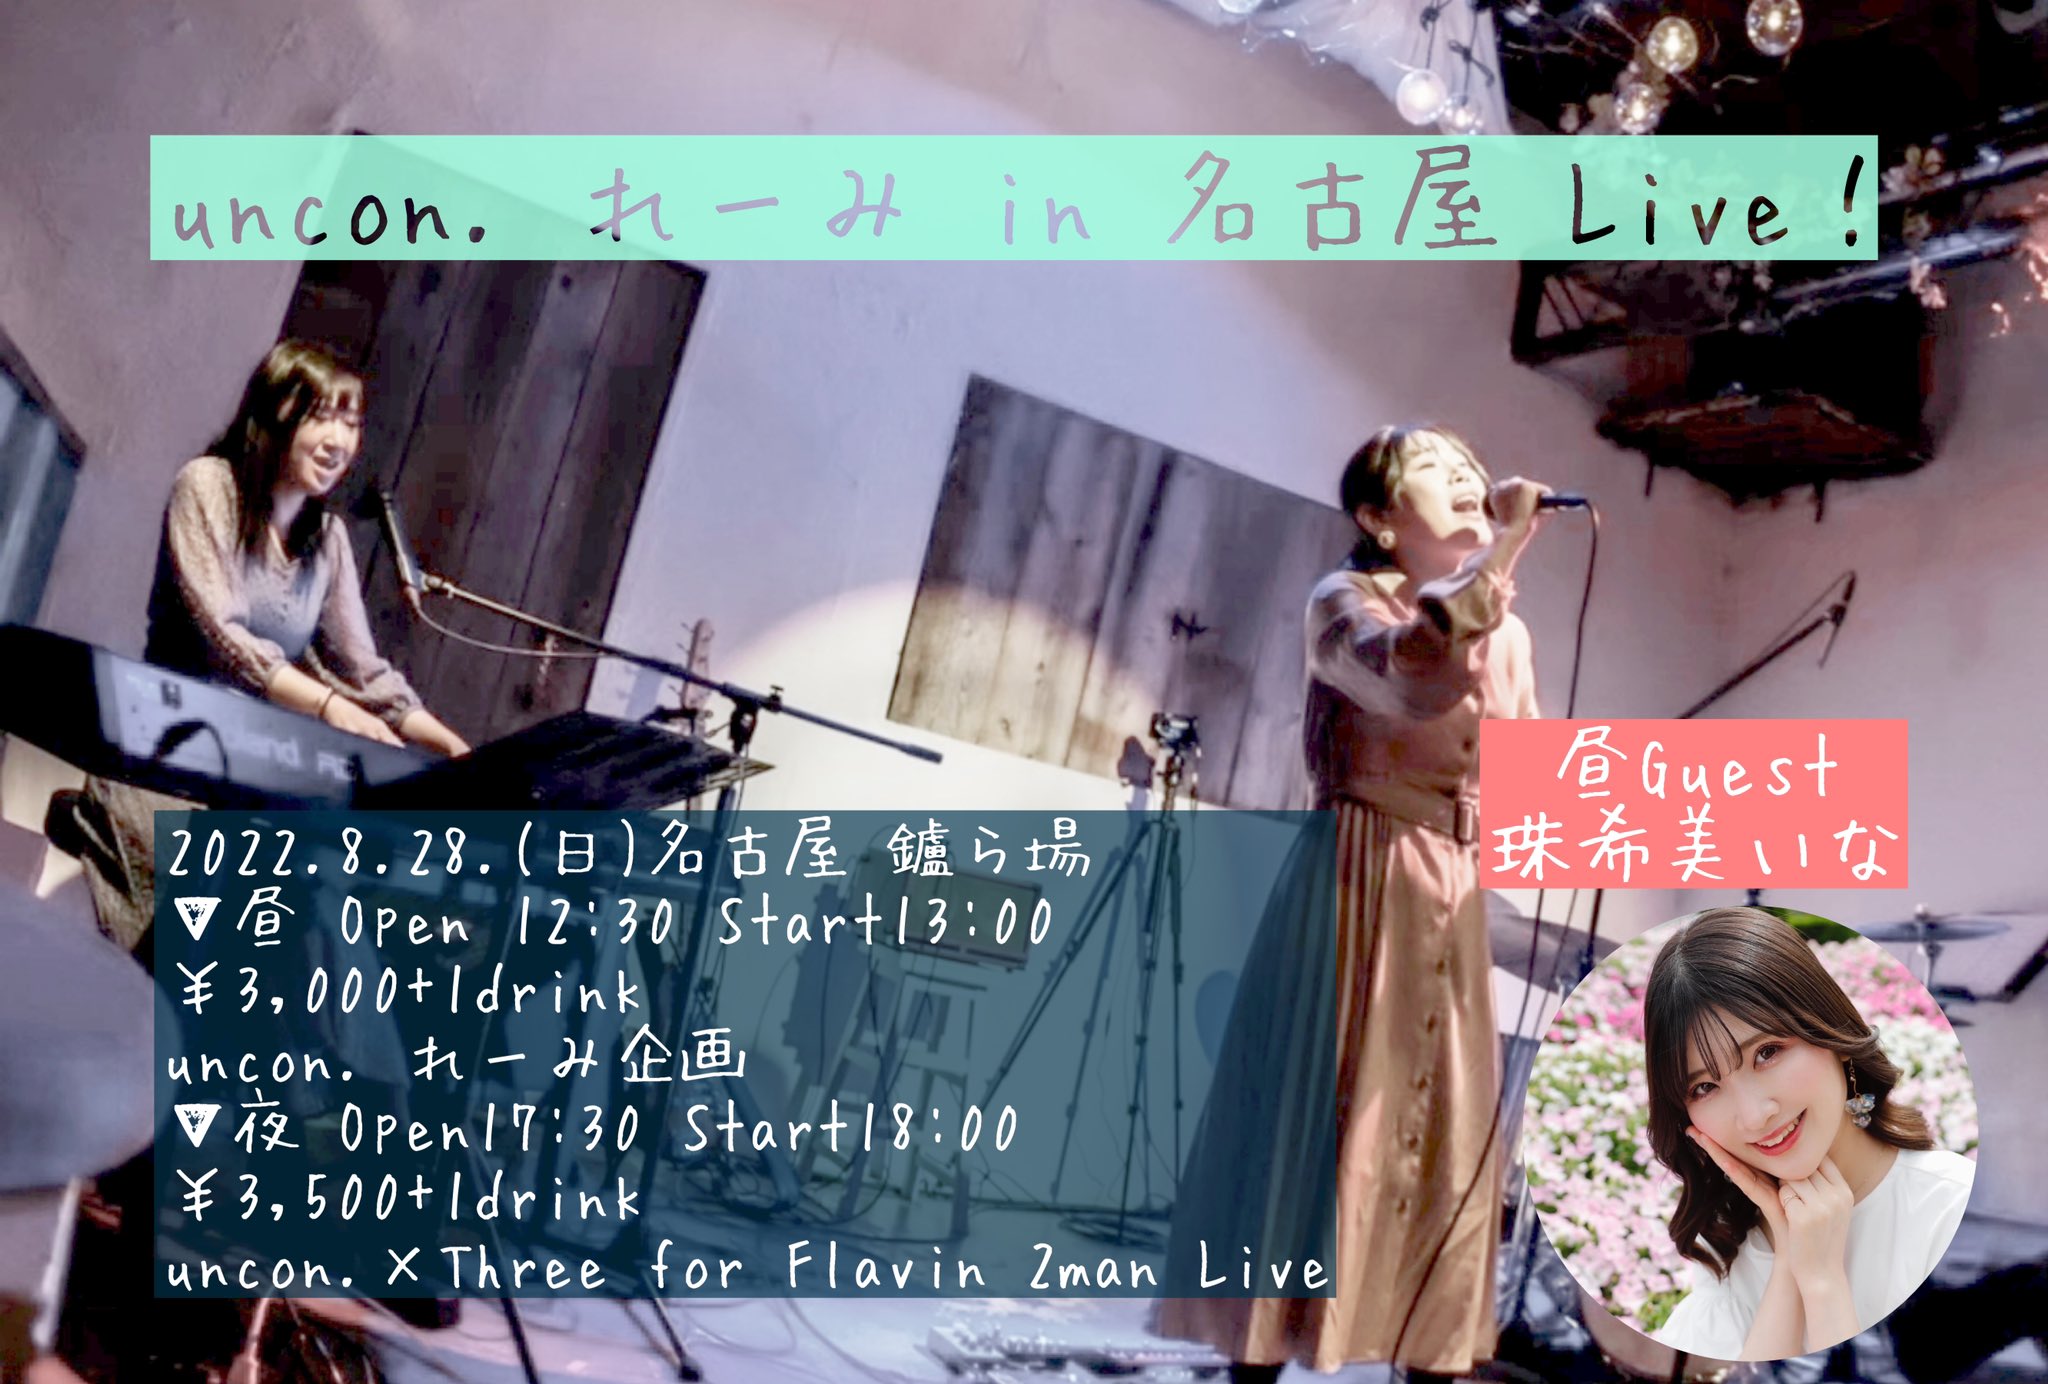 uncon. × Three for Flavin 2man Live